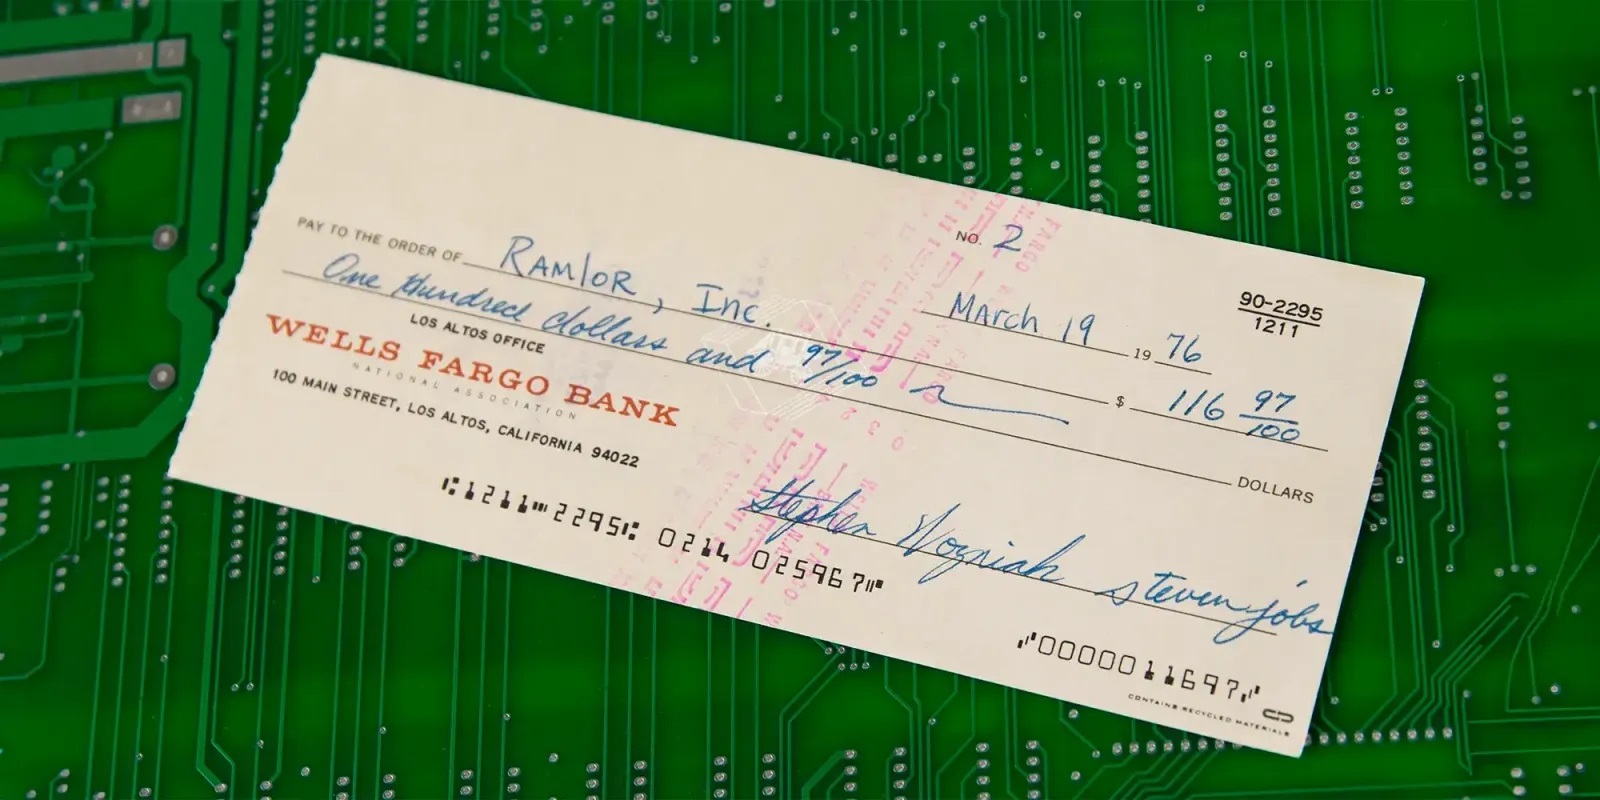 En Apple-check fra 1976 underskrevet af Jobs og Wozniak solgt på auktion for 135.000 dollars.